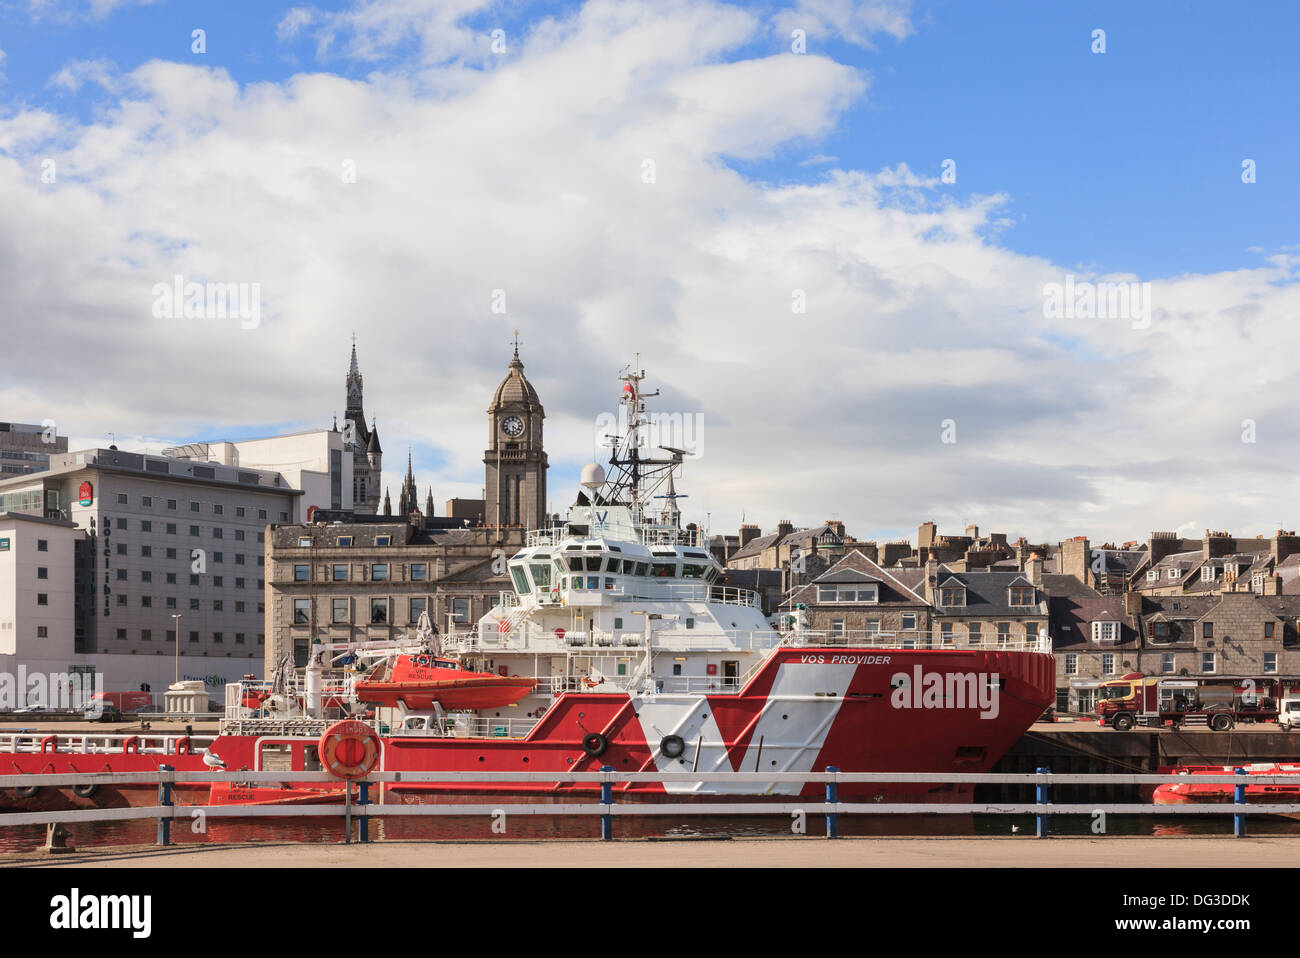 VOS SERVICES MOBILES un groupe d'expédition VROON offshore de la mer du Nord un navire d'approvisionnement d'huile dans le dock avec centre-ville au-delà de port d'Aberdeen en Écosse Banque D'Images